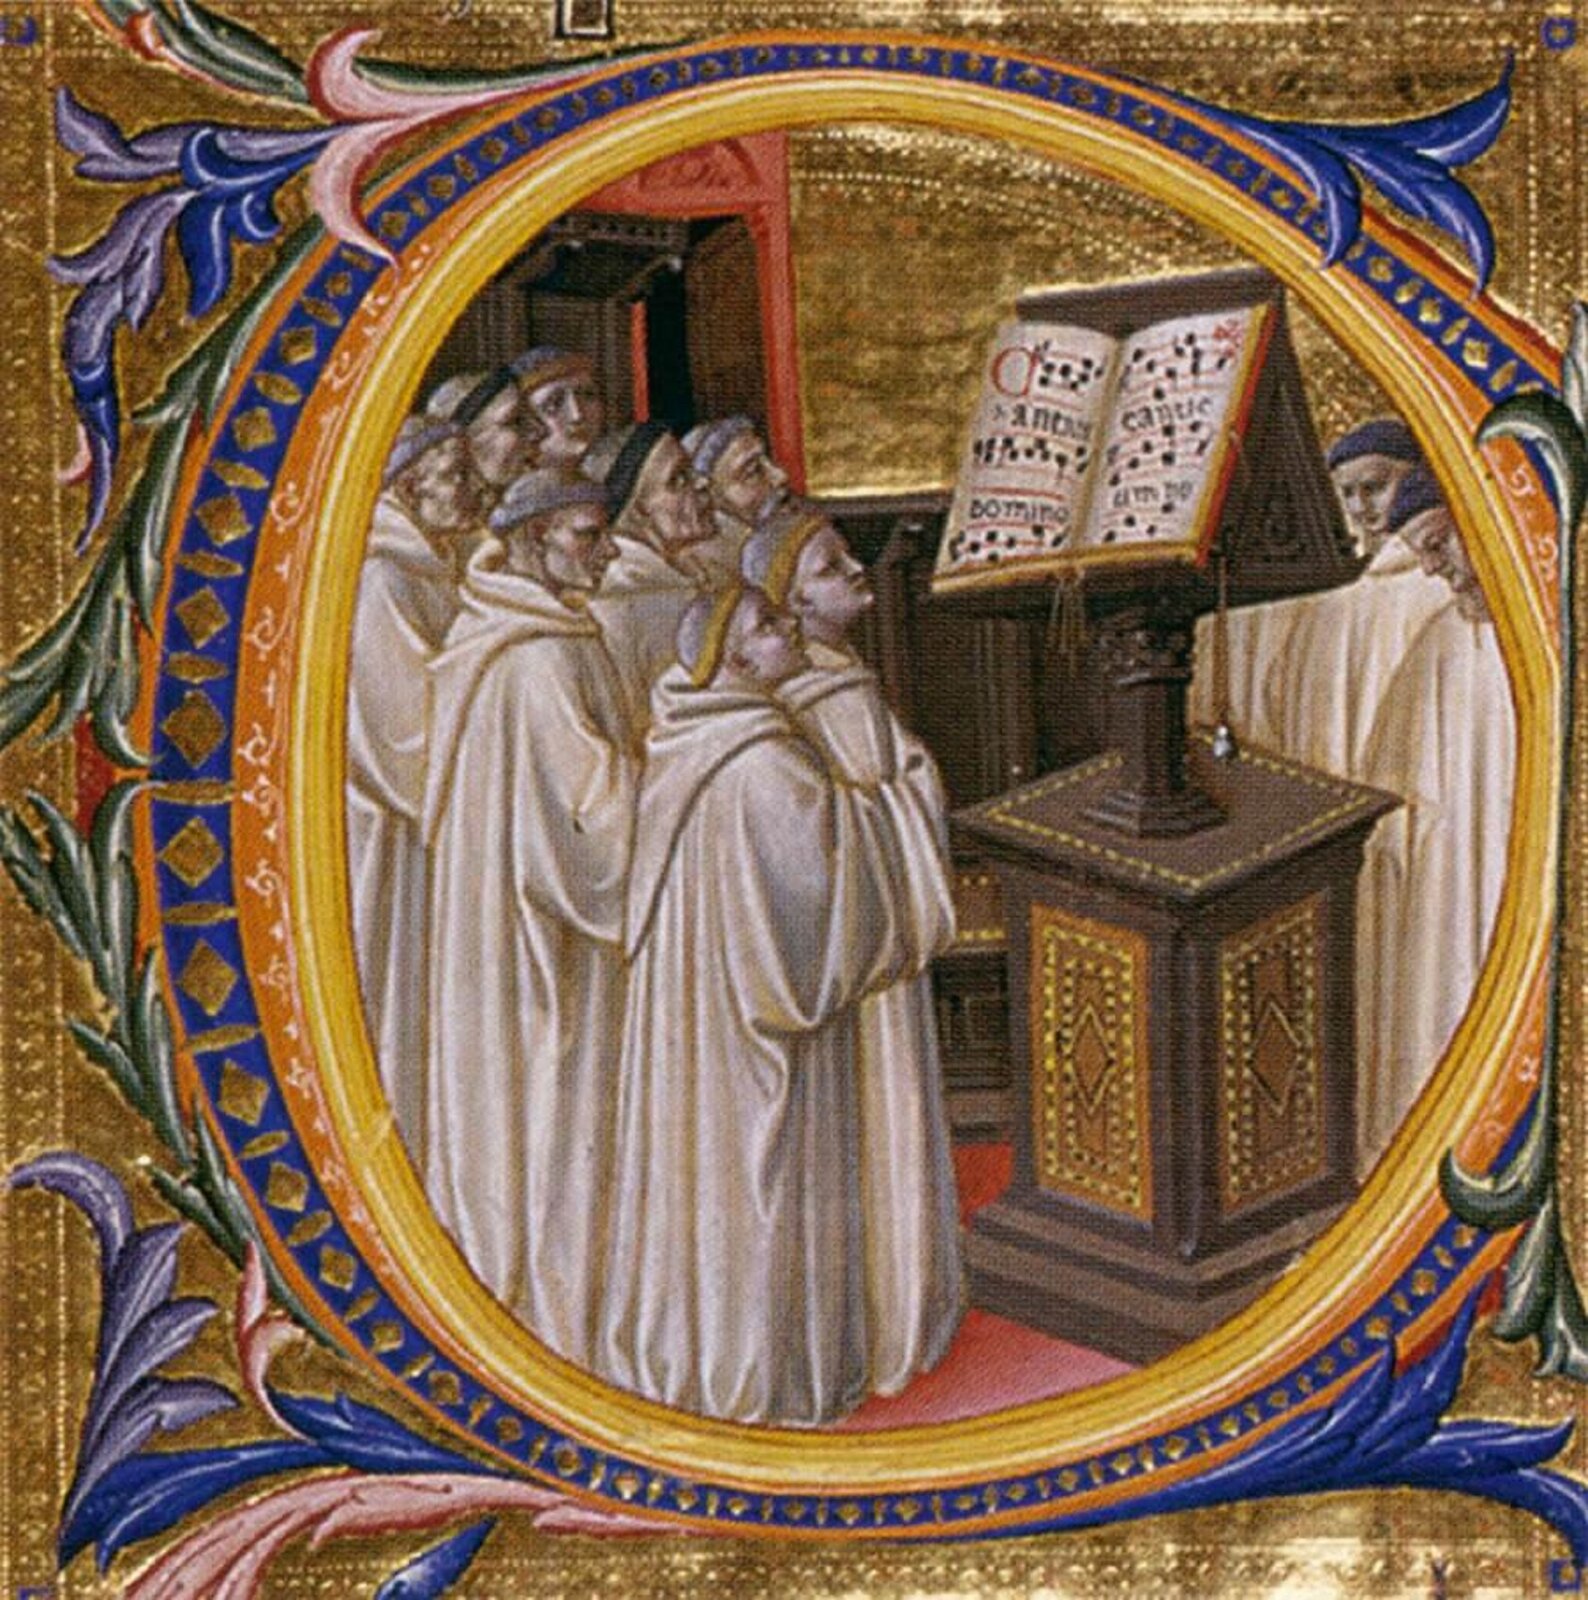 Kolorowa ilustracja pochodząca z Chorałów Greogriańskich. Ilustracja przedstawiająca chór duchownych stojących przed zapisem utworu. Mężczyźni ubrani są w jasne, długie szaty.